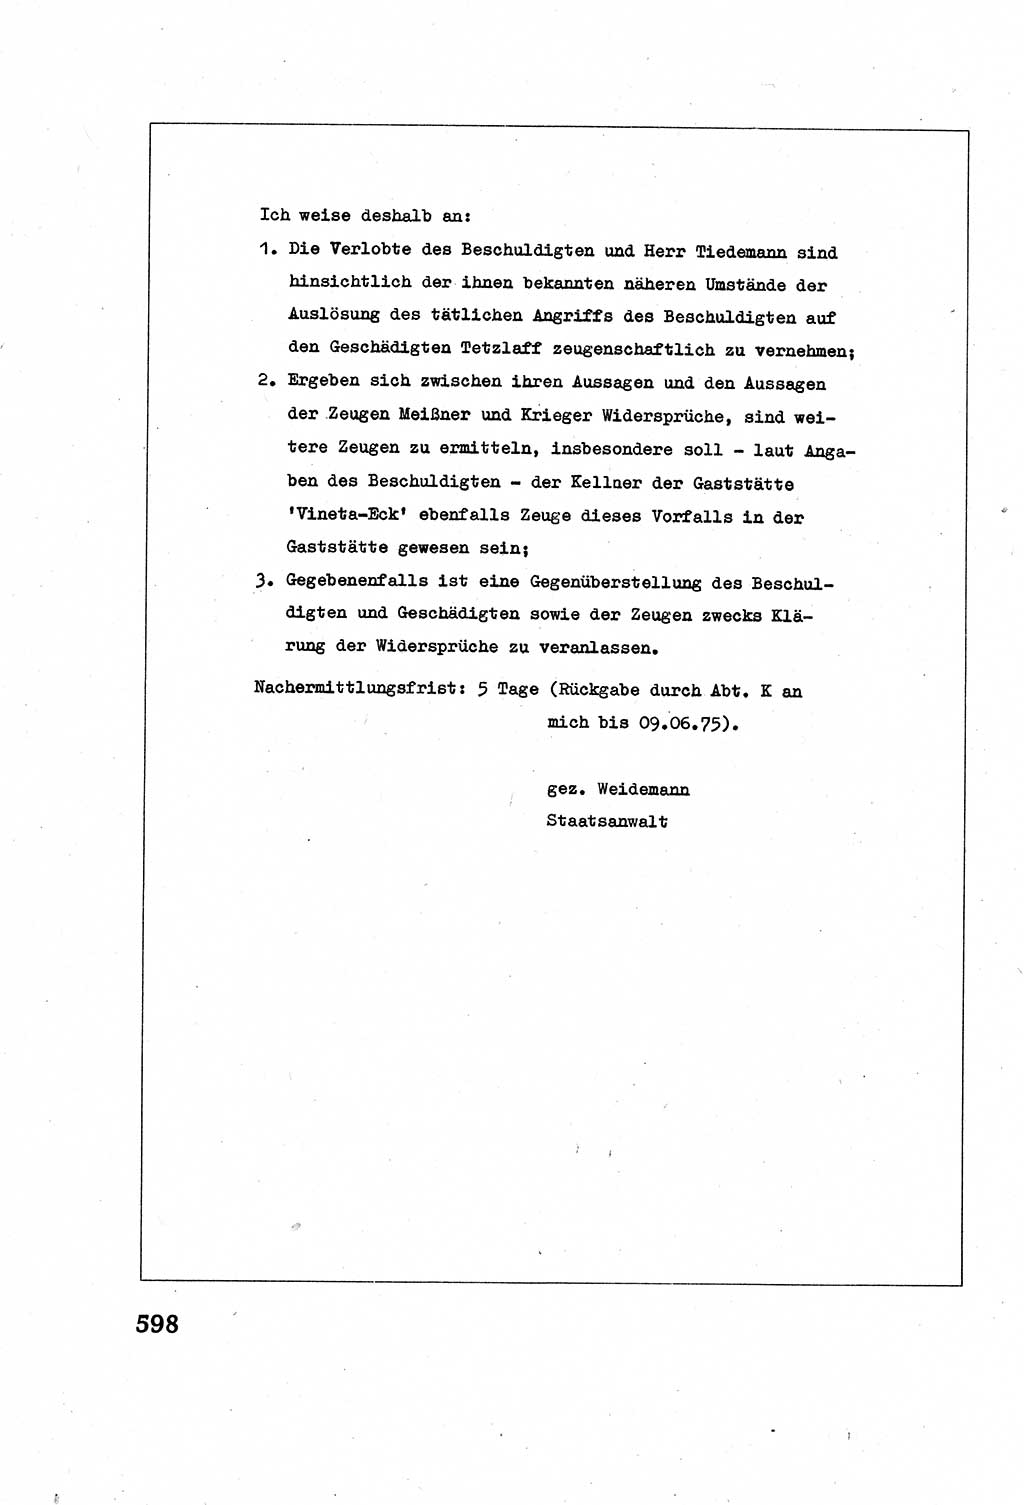 Strafverfahrensrecht [Deutsche Demokratische Republik (DDR)], Lehrbuch 1977, Seite 598 (Strafverf.-R. DDR Lb. 1977, S. 598)